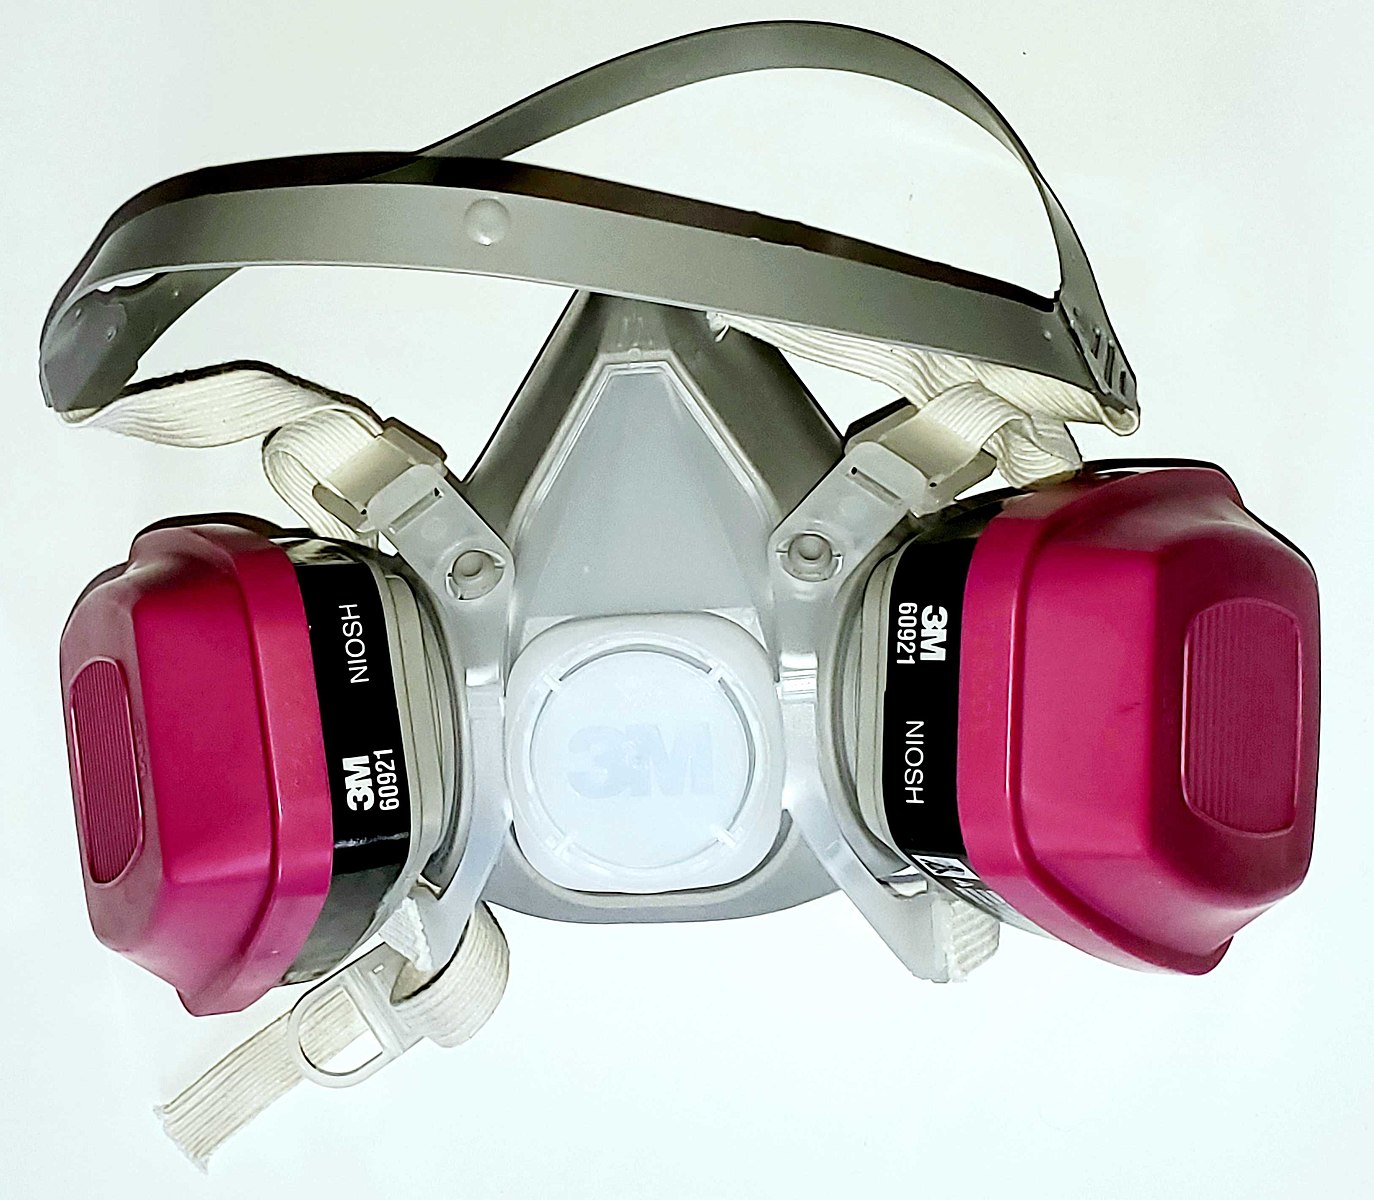 Ventilators vs. Respirators: What's the Difference?